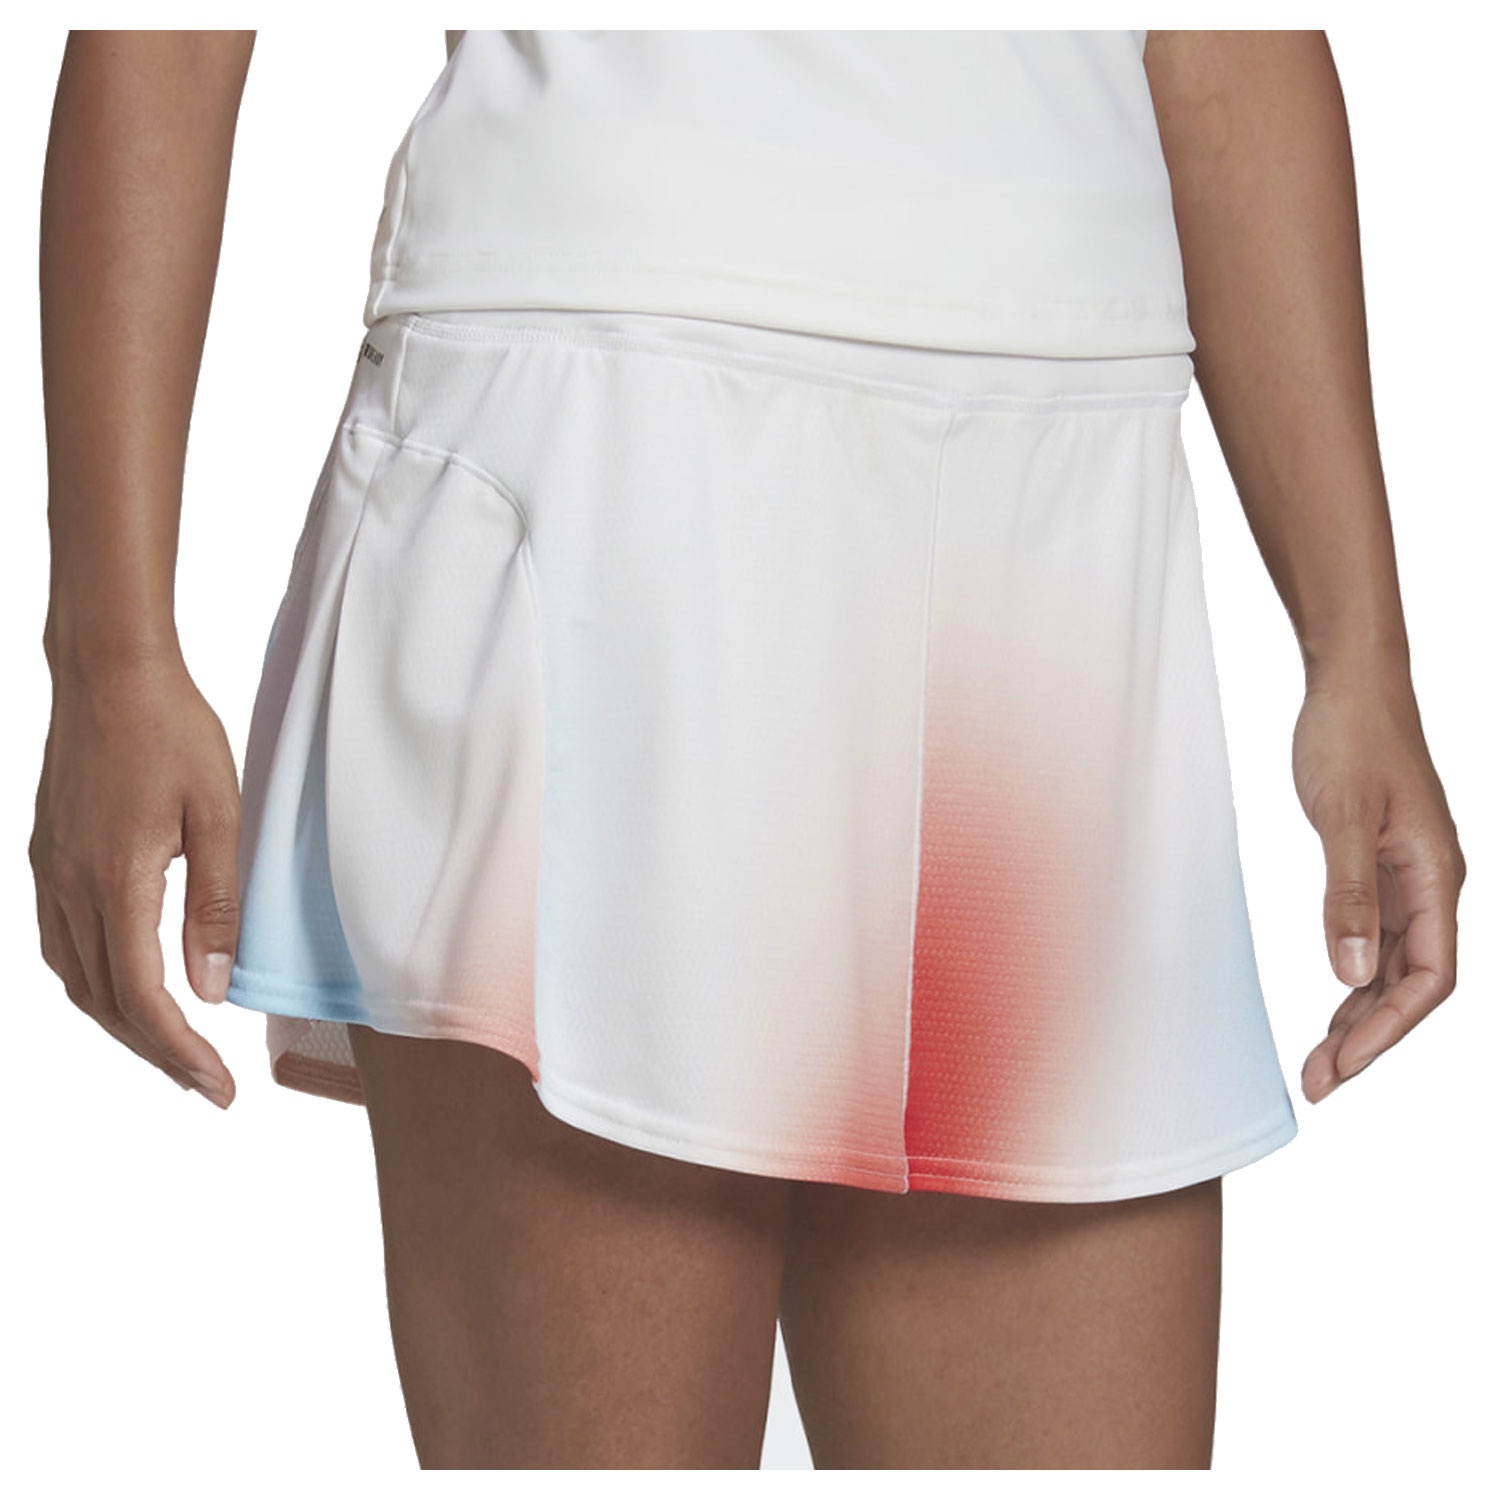 Adidas Mebourne Skirt White/Vivid Red